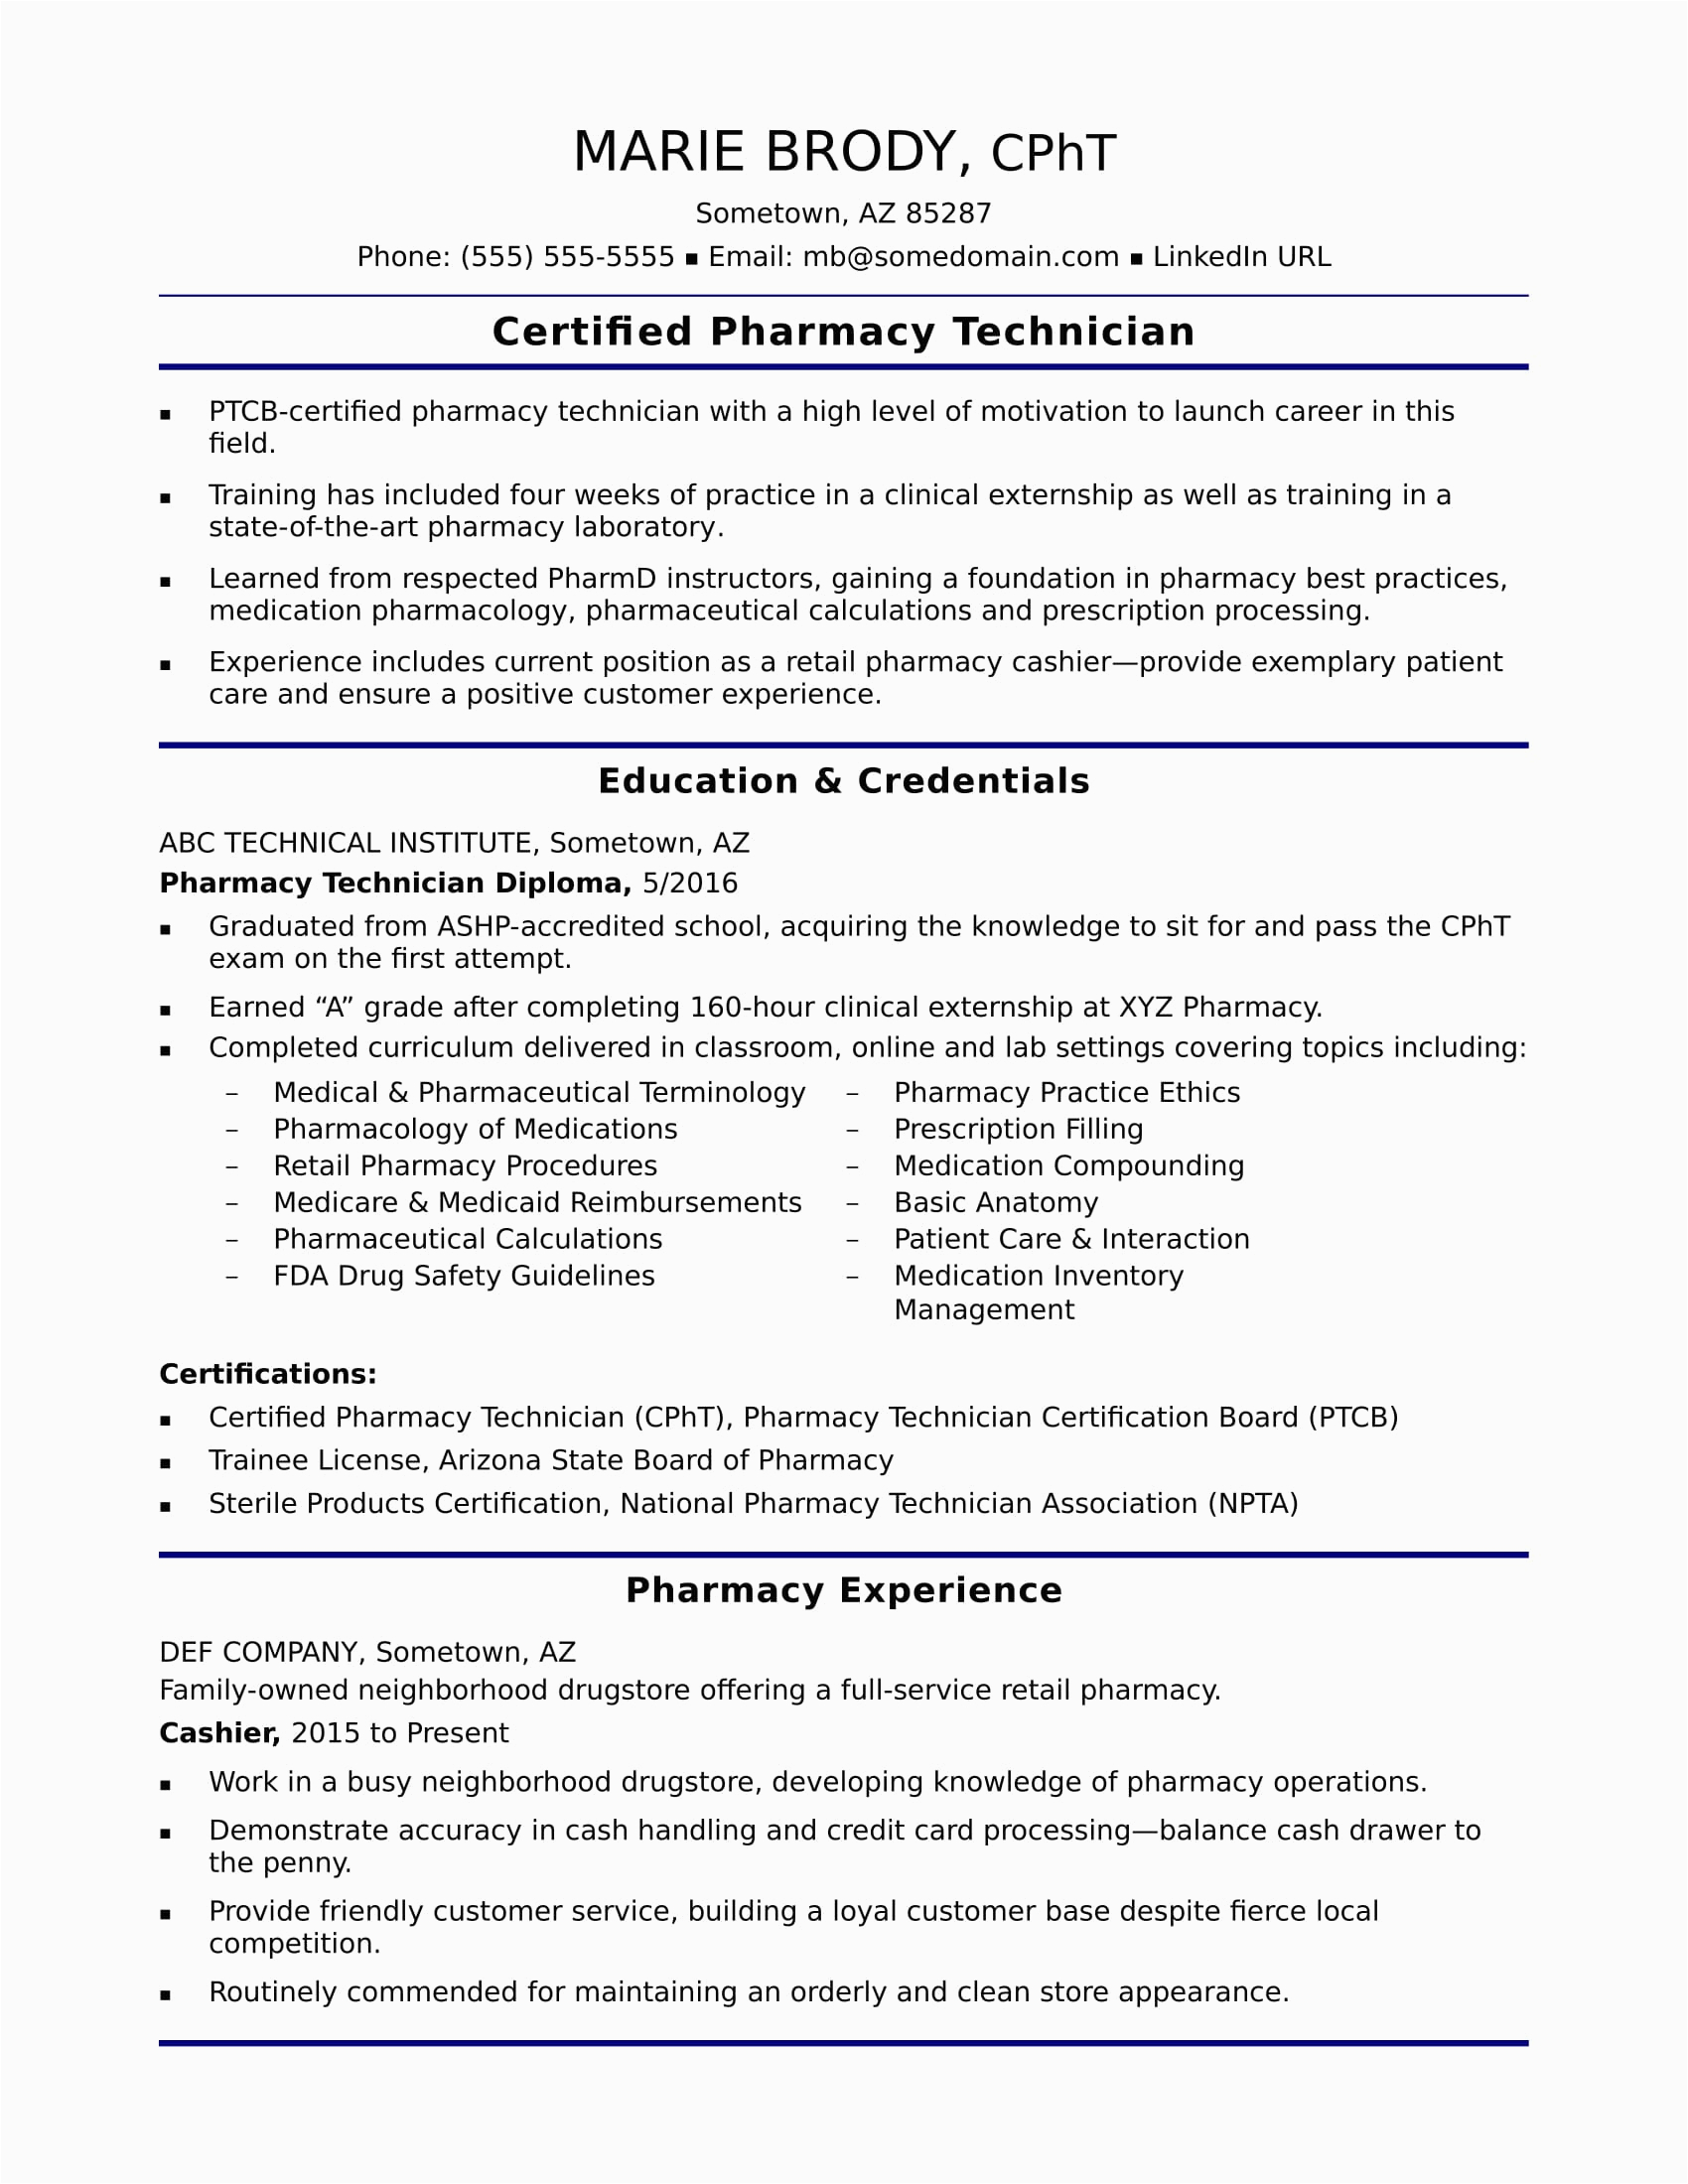 Sample Resume for Pharmacy Technician Entry Level Entry Level Pharmacy Technician Resume Sample